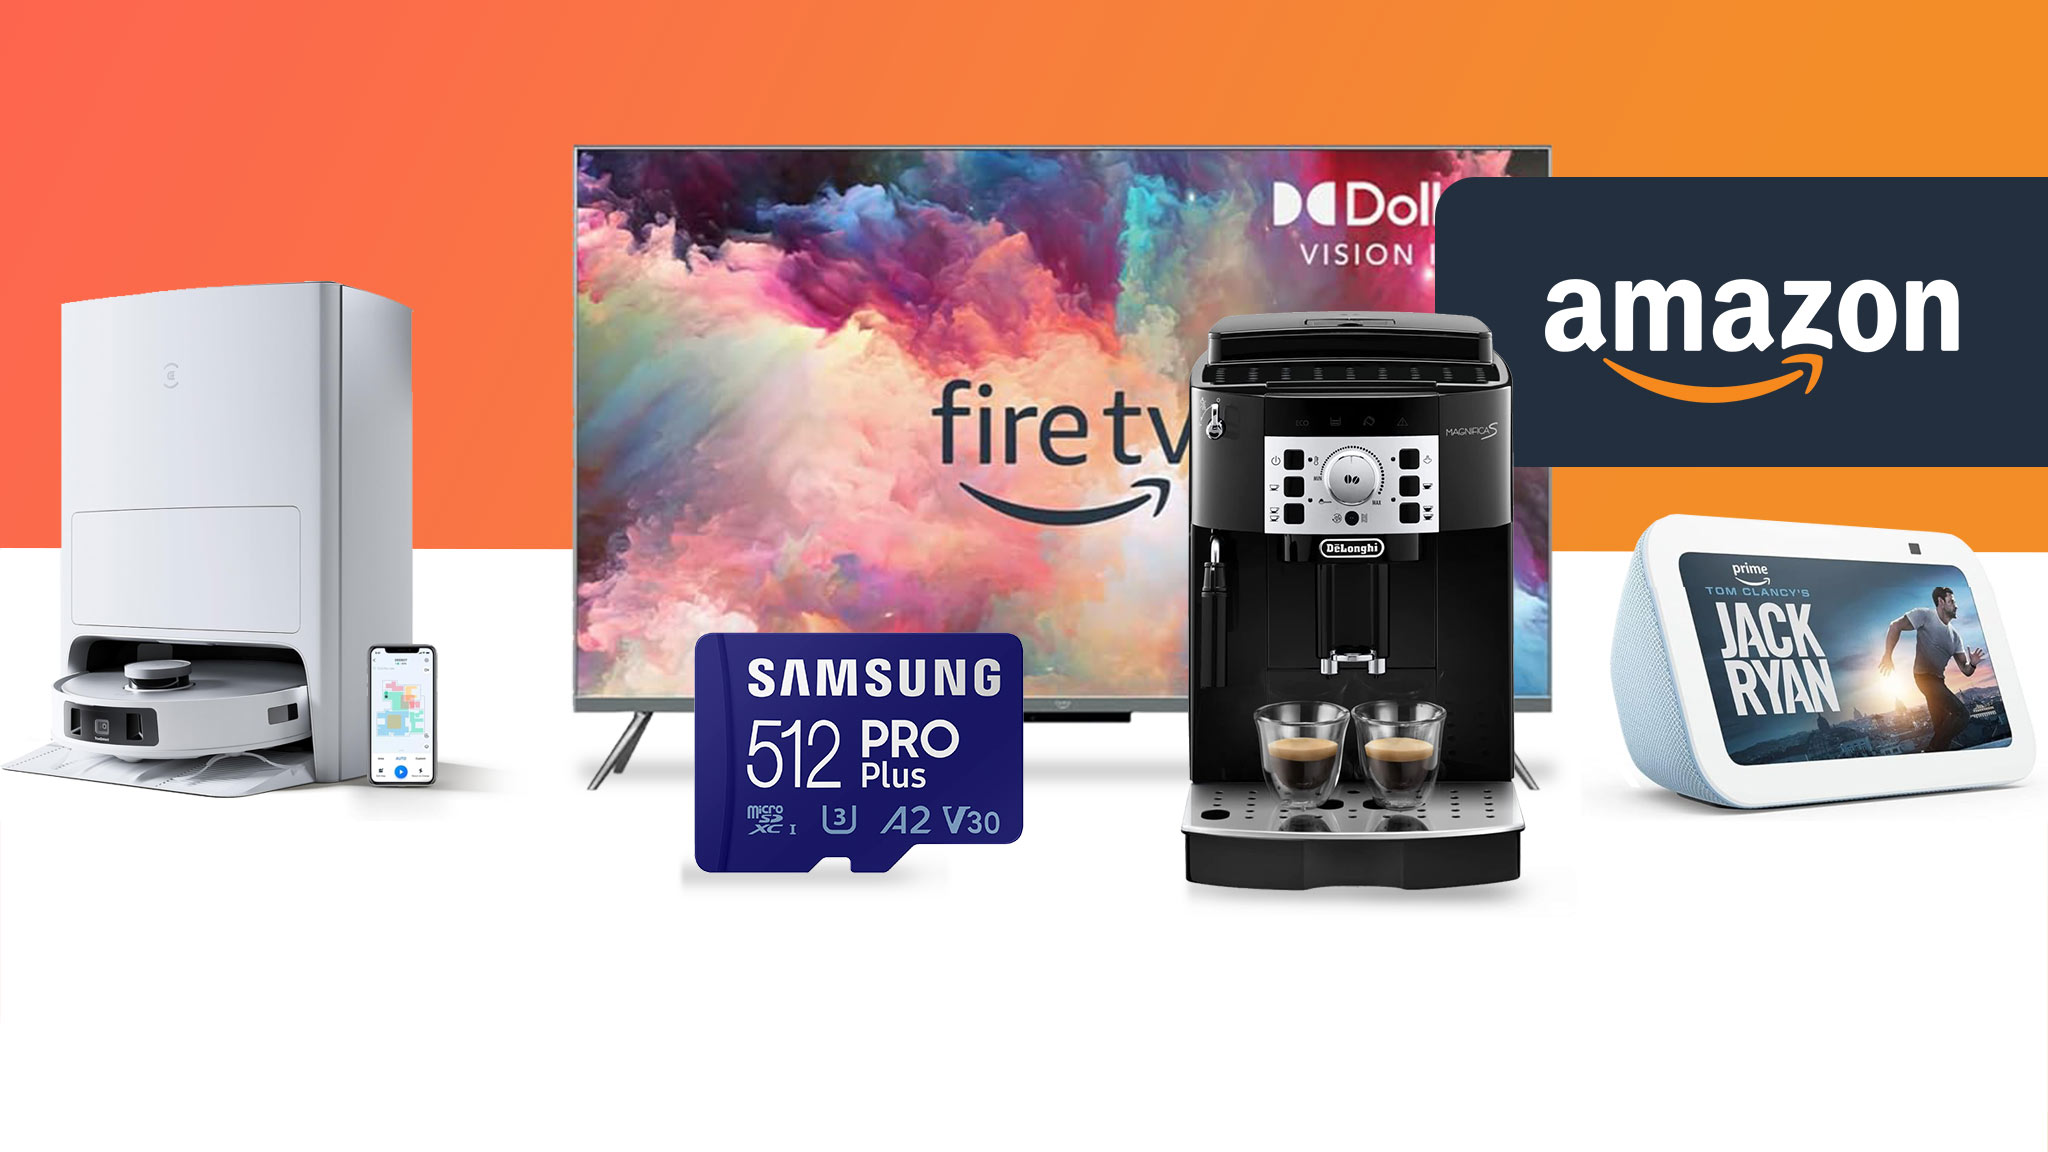 Amazon Last Minute Angebote: Letzte Top-Deals vor dem Fest einsacken!